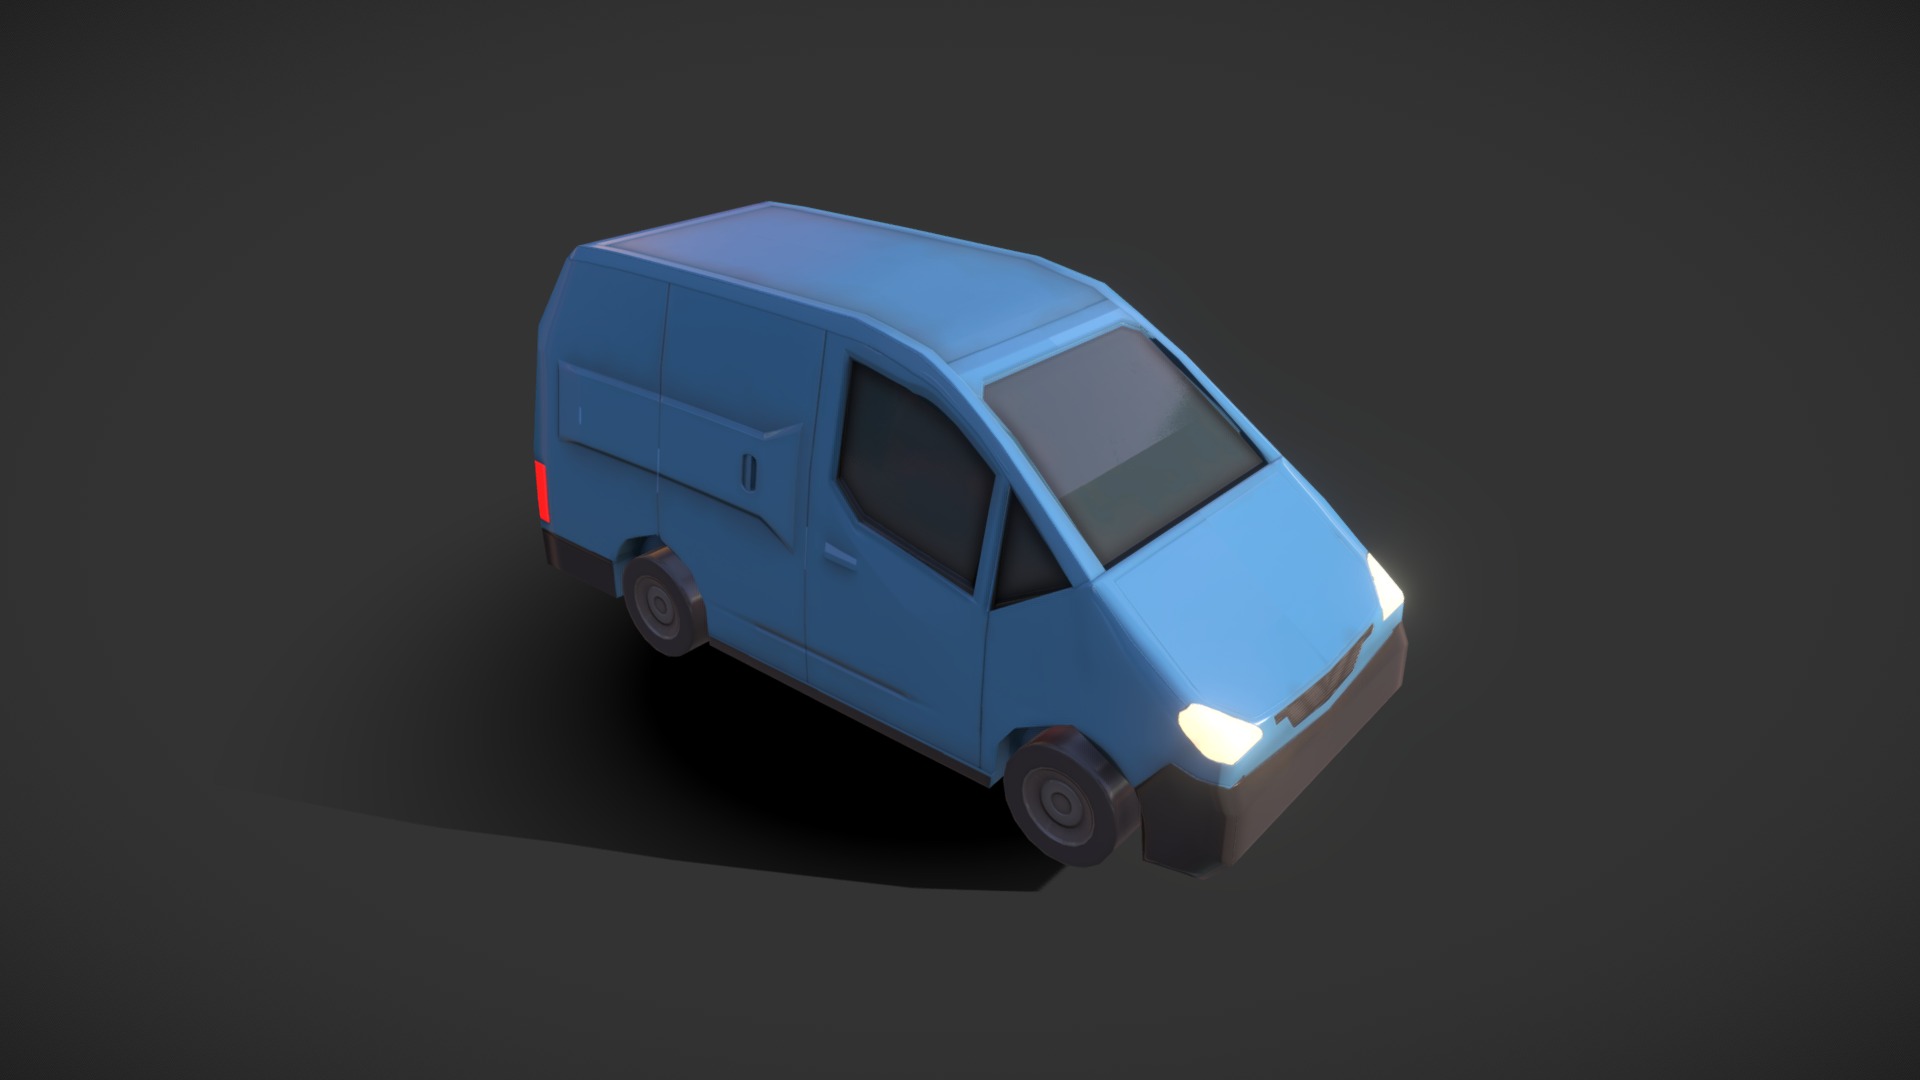 3D model Van – Blue - This is a 3D model of the Van - Blue. The 3D model is about a small blue car.